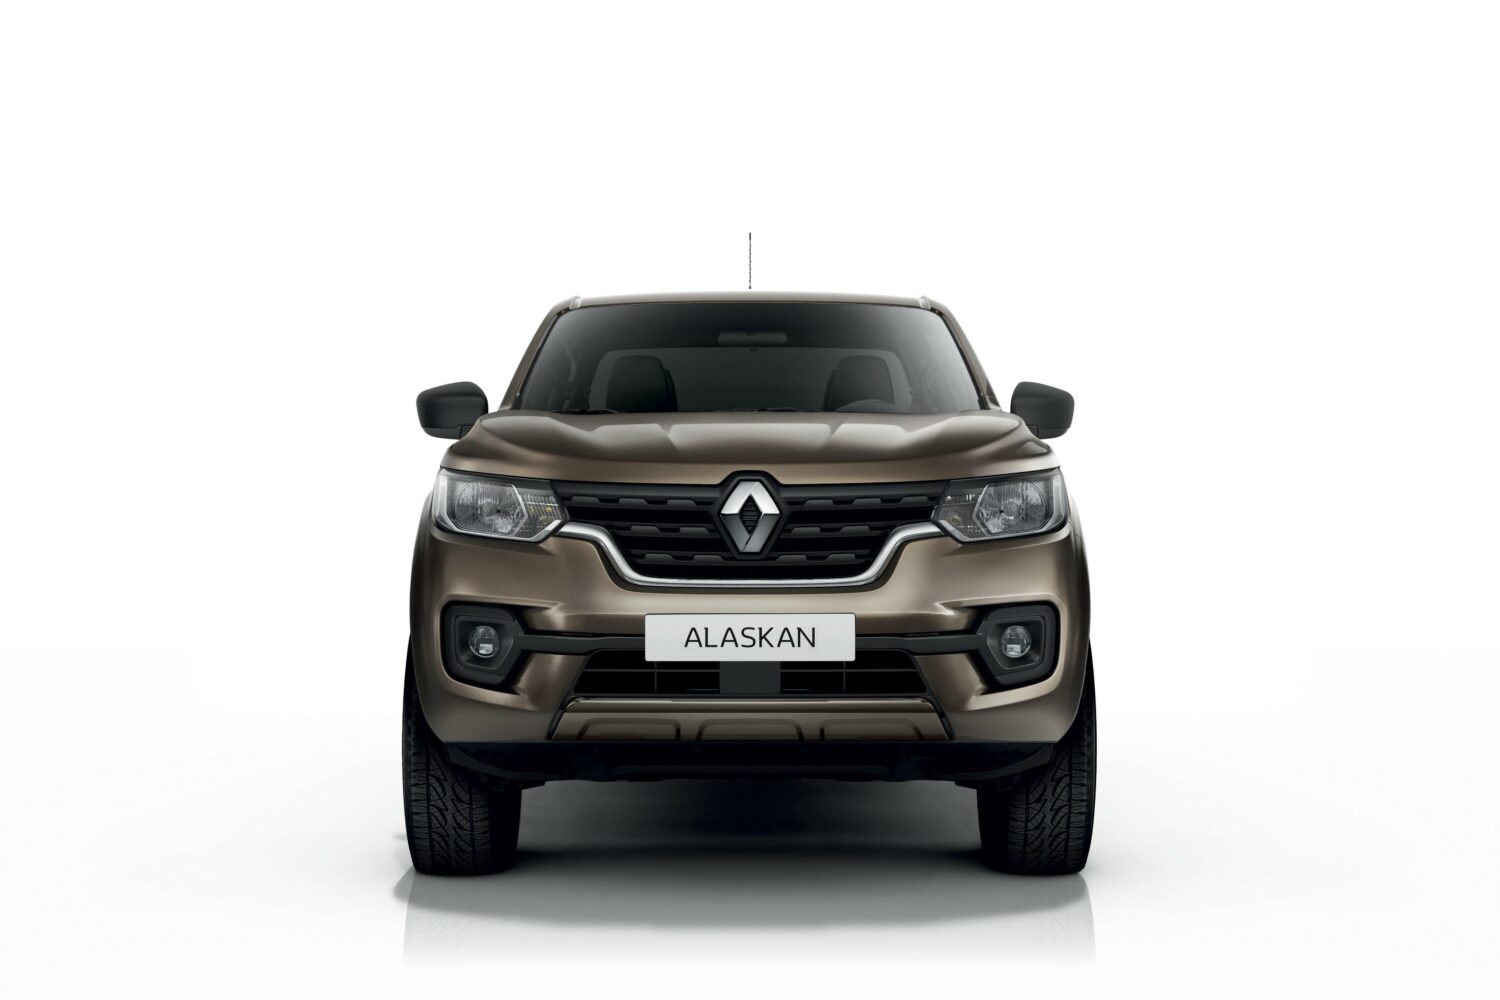 2019 - New Renault ALASKAN